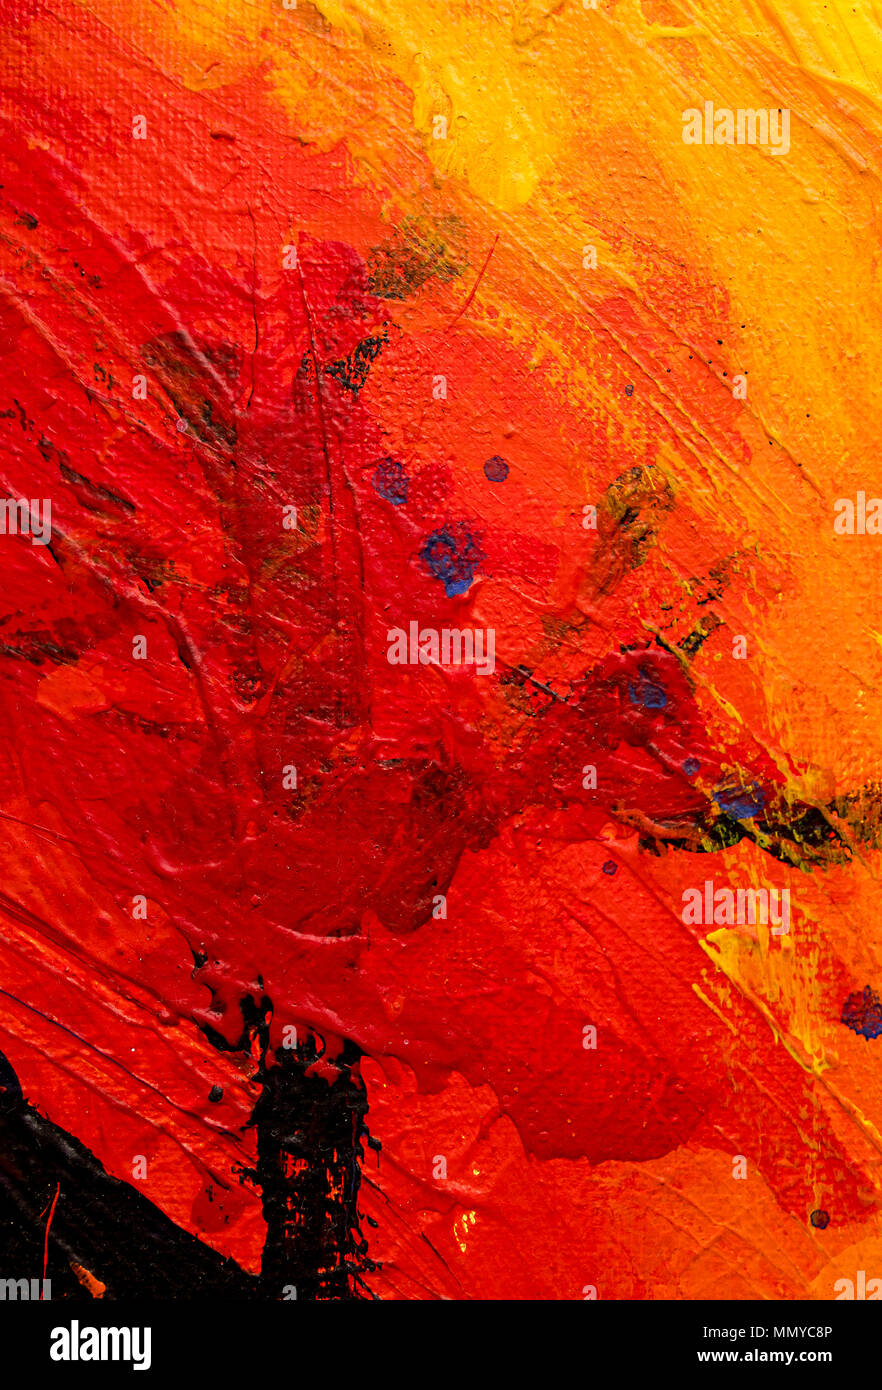 Un vibrant et coloré, l'huile et l'acrylique la peinture abstraite sur toile peint avec des coups de pinceau libre et sauvage en rouge, orange et jaune Banque D'Images